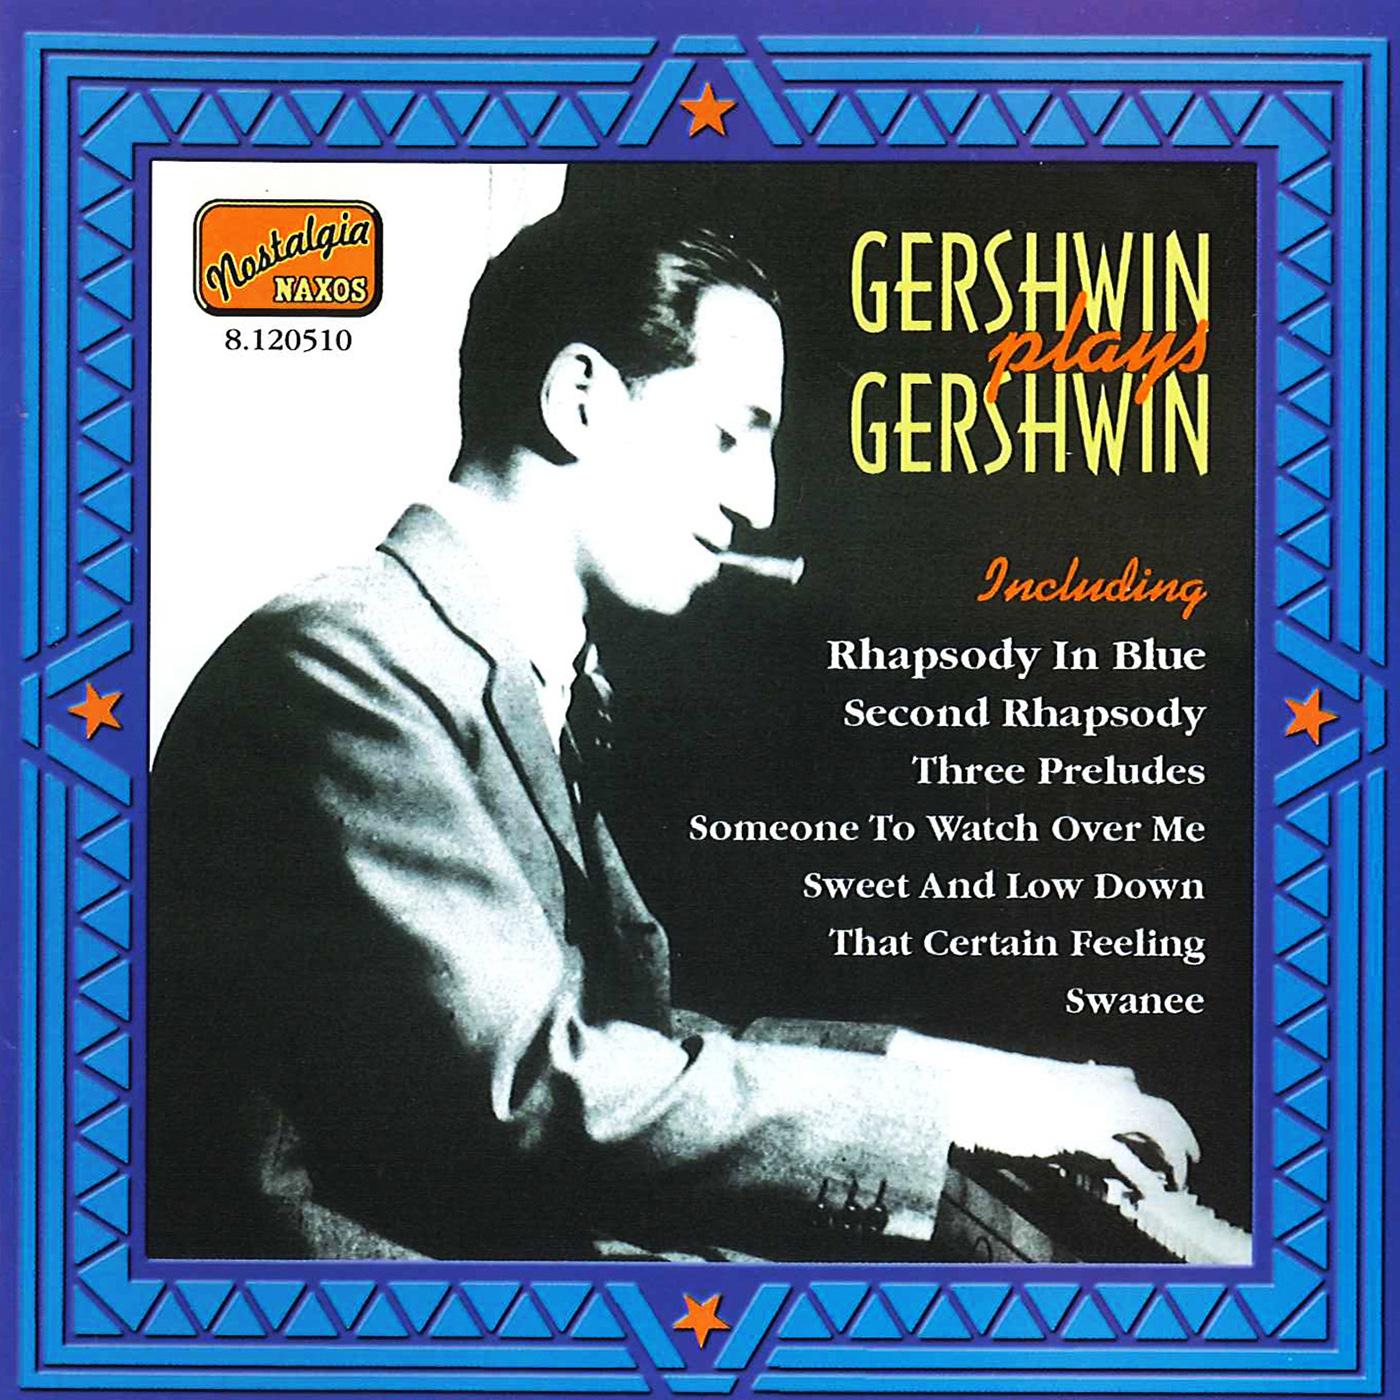 GERSHWIN, George: Gershwin Plays Gershwin (1919-1931)